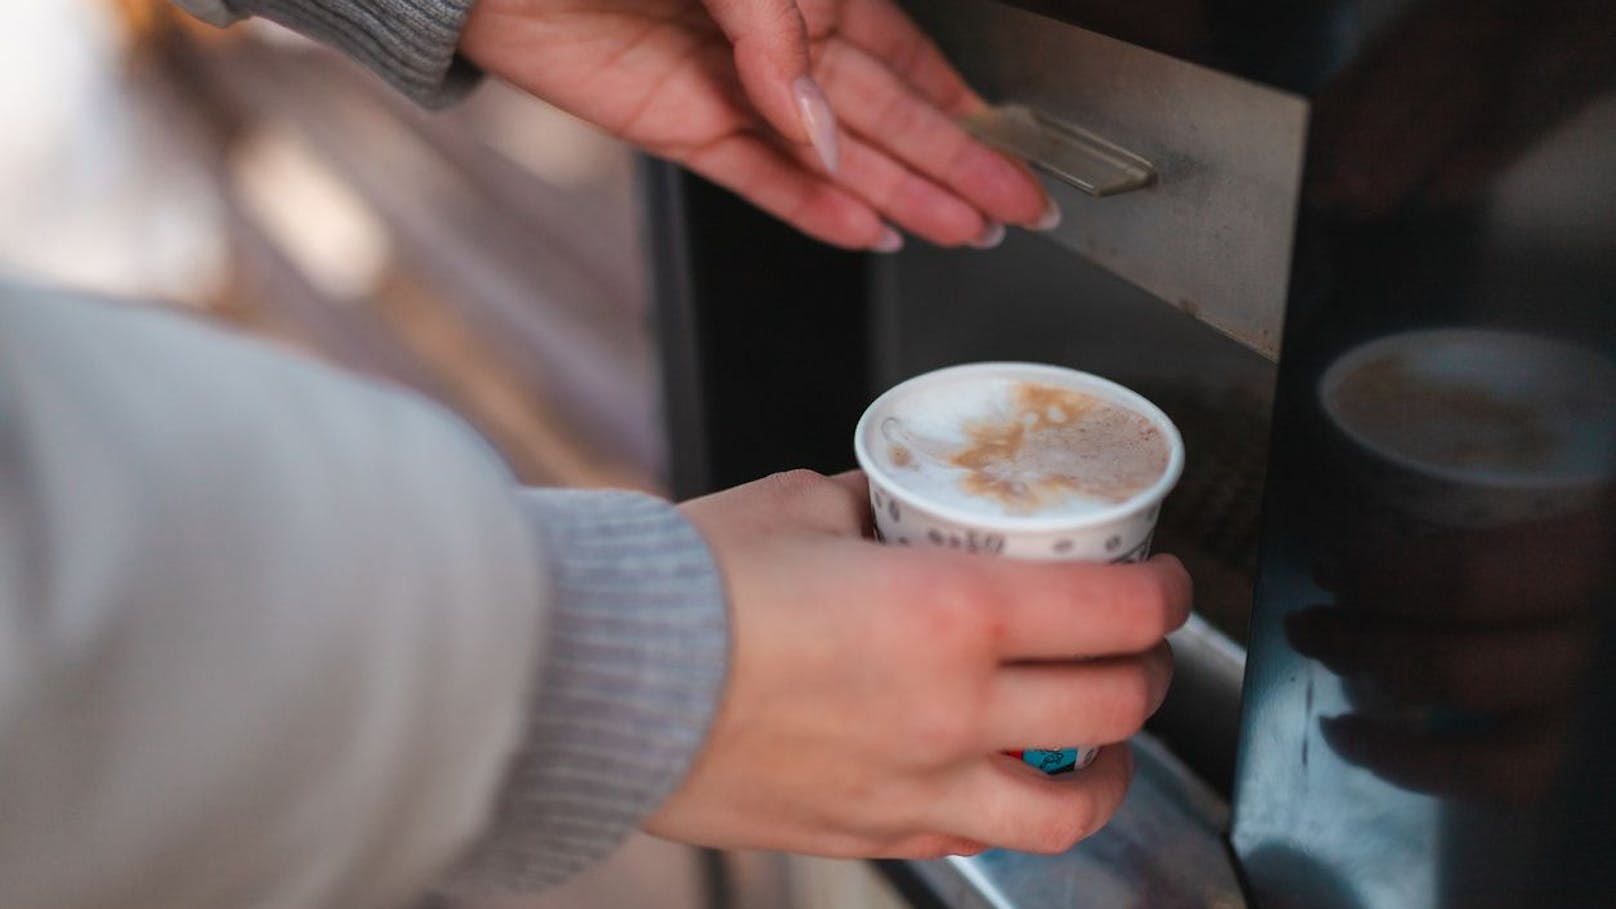 Kaffee aus dem Automat – dann kämpft Frau um ihr Leben